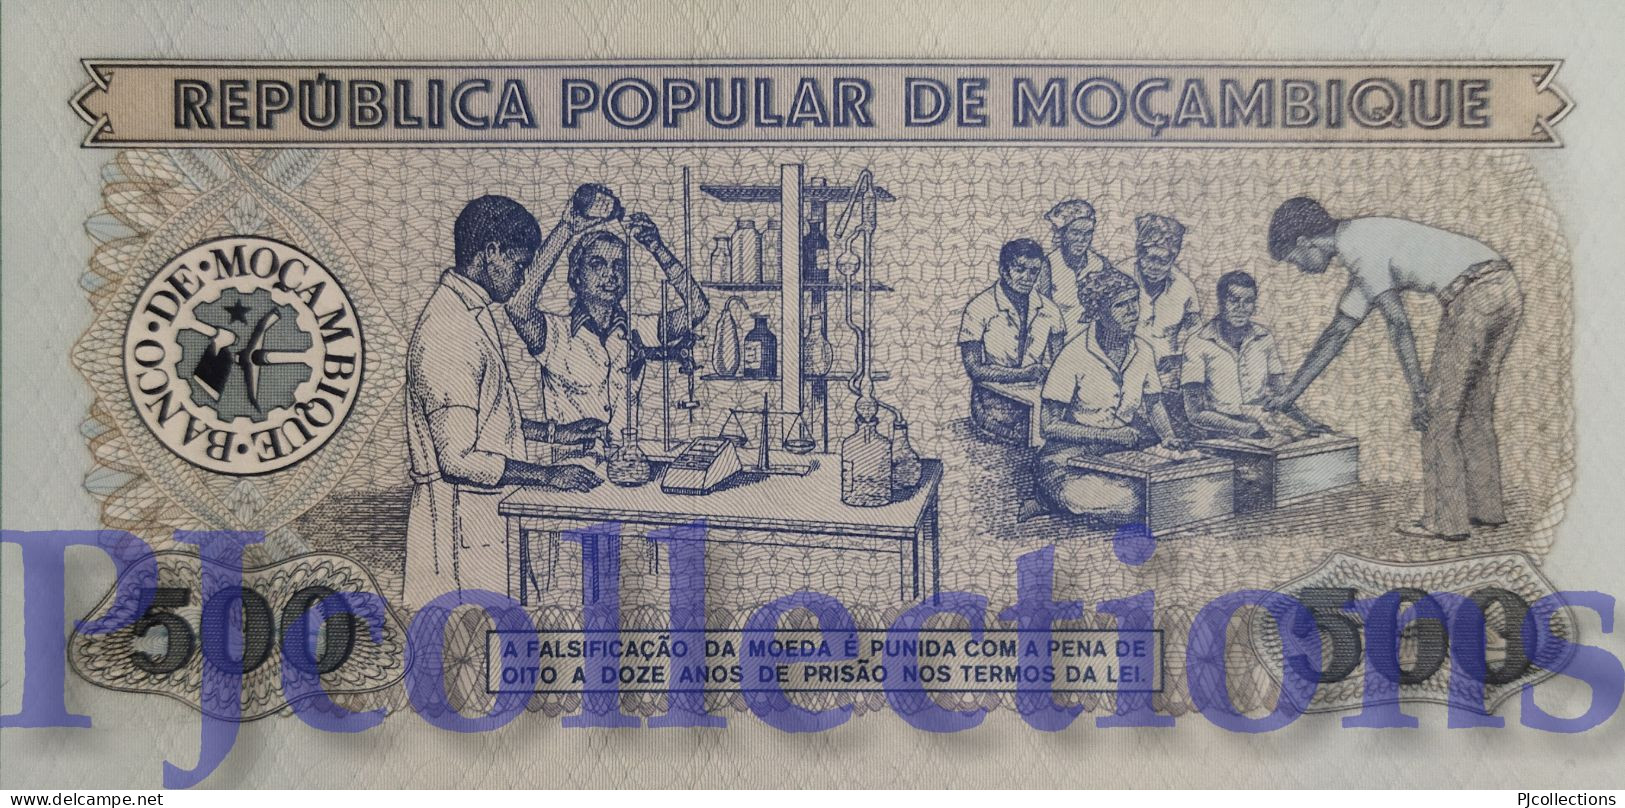 MOZAMBIQUE 500 ESCUDOS 1983 PICK 131a UNC LOW SERIAL NUMBER "AC0002402" - Moçambique